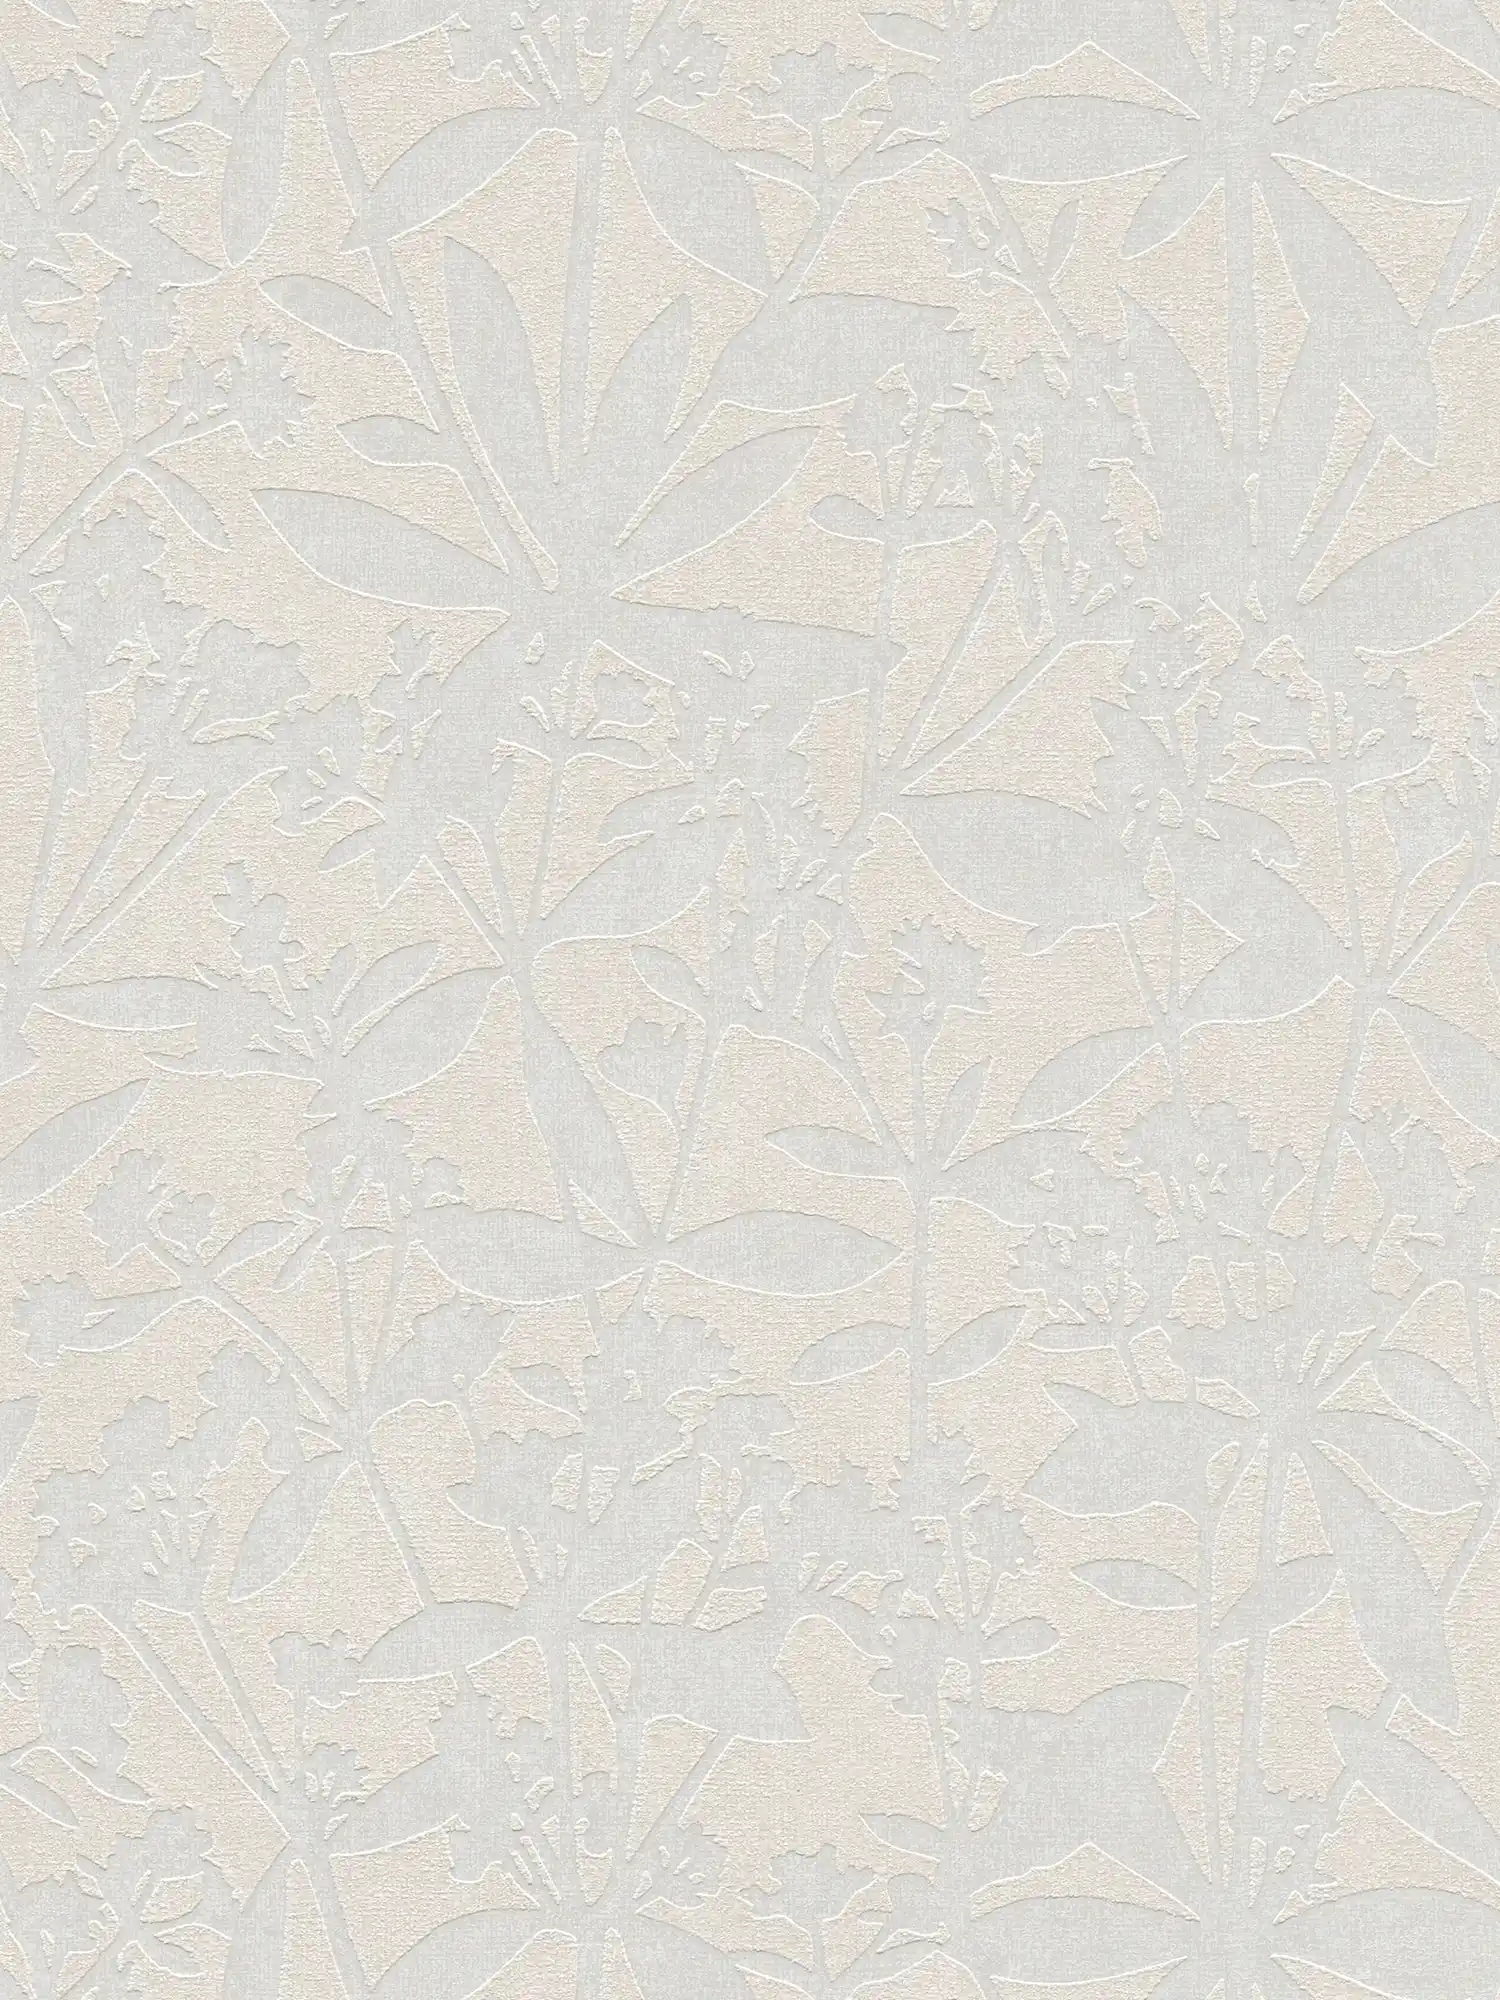 Papel pintado no tejido floral con textura de flores - crema, blanco
